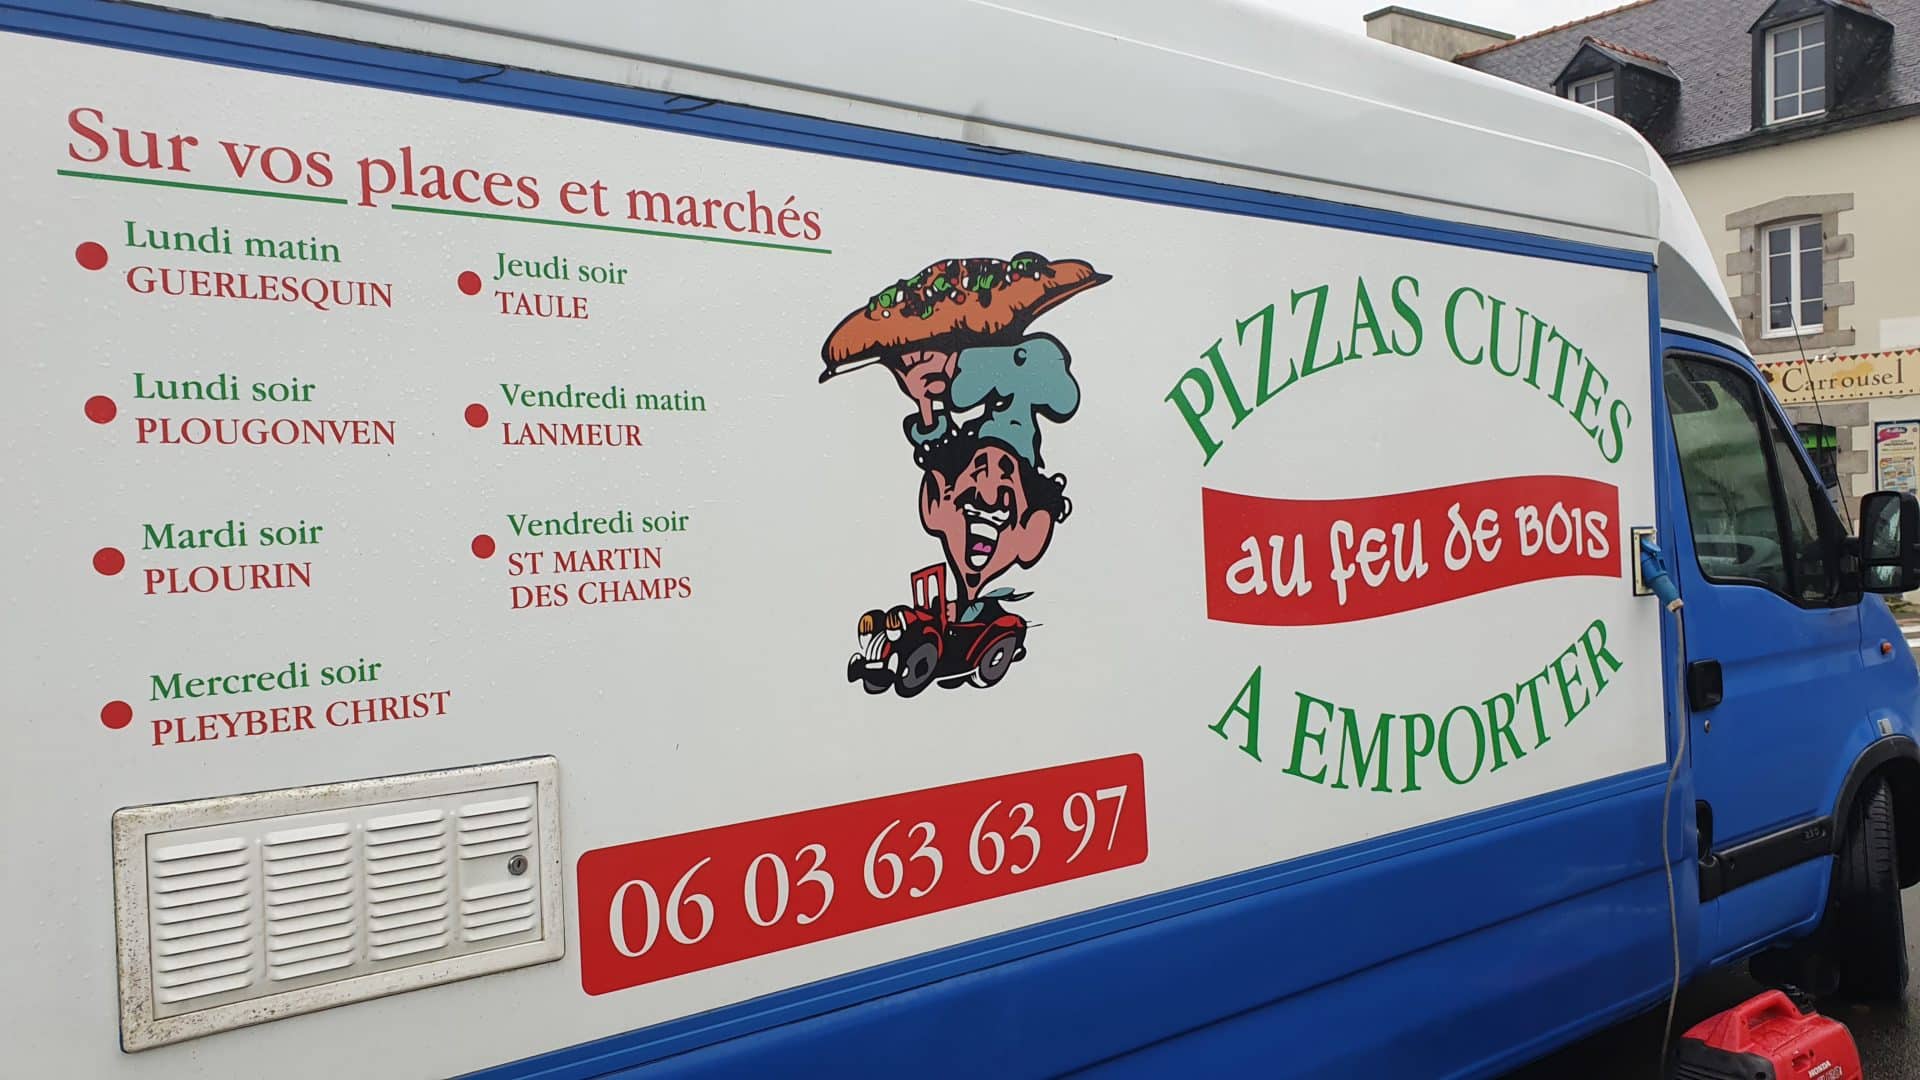 Paulo Pizza la carte des Pizzas a emportees sur Taule Saint Martin des Champs et Pleyber Christ 4 - La carte